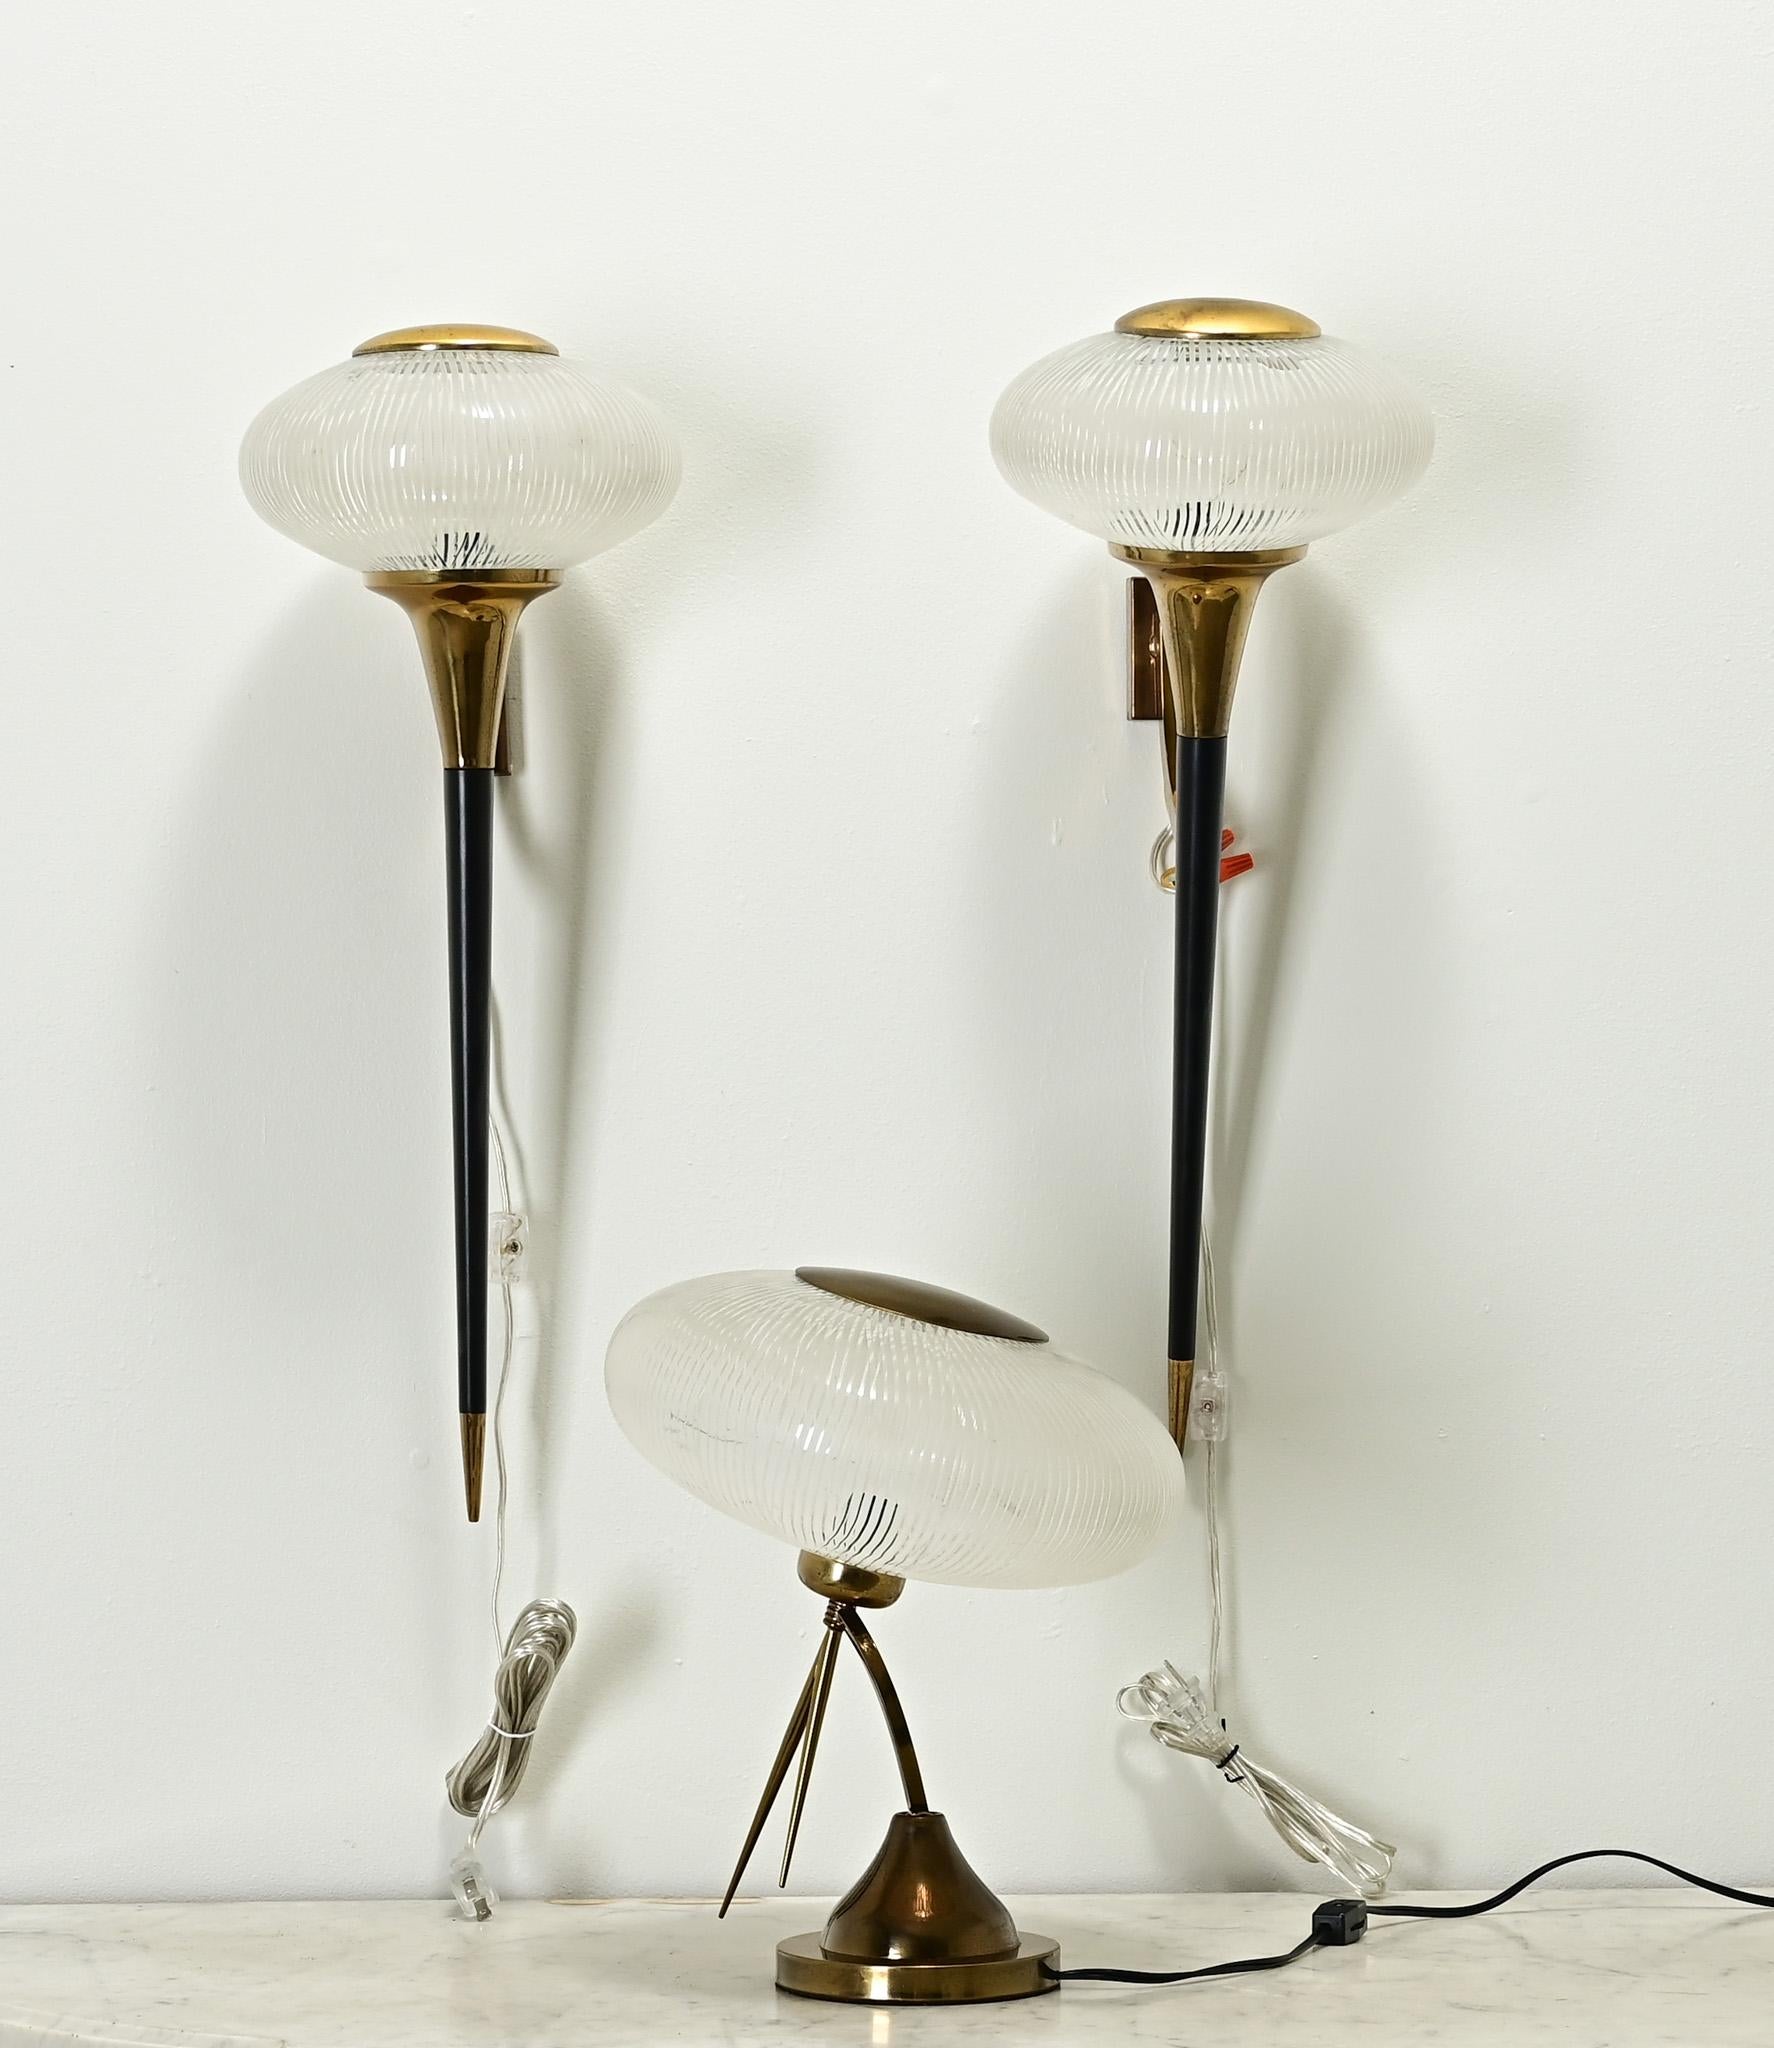 Une impressionnante collection composée d'une paire d'appliques et d'une lampe de table fabriquées en France au milieu du siècle dernier. Les luminaires sont tous dotés d'une plaque ronde en laiton, amovible, qui permet de changer une seule ampoule.